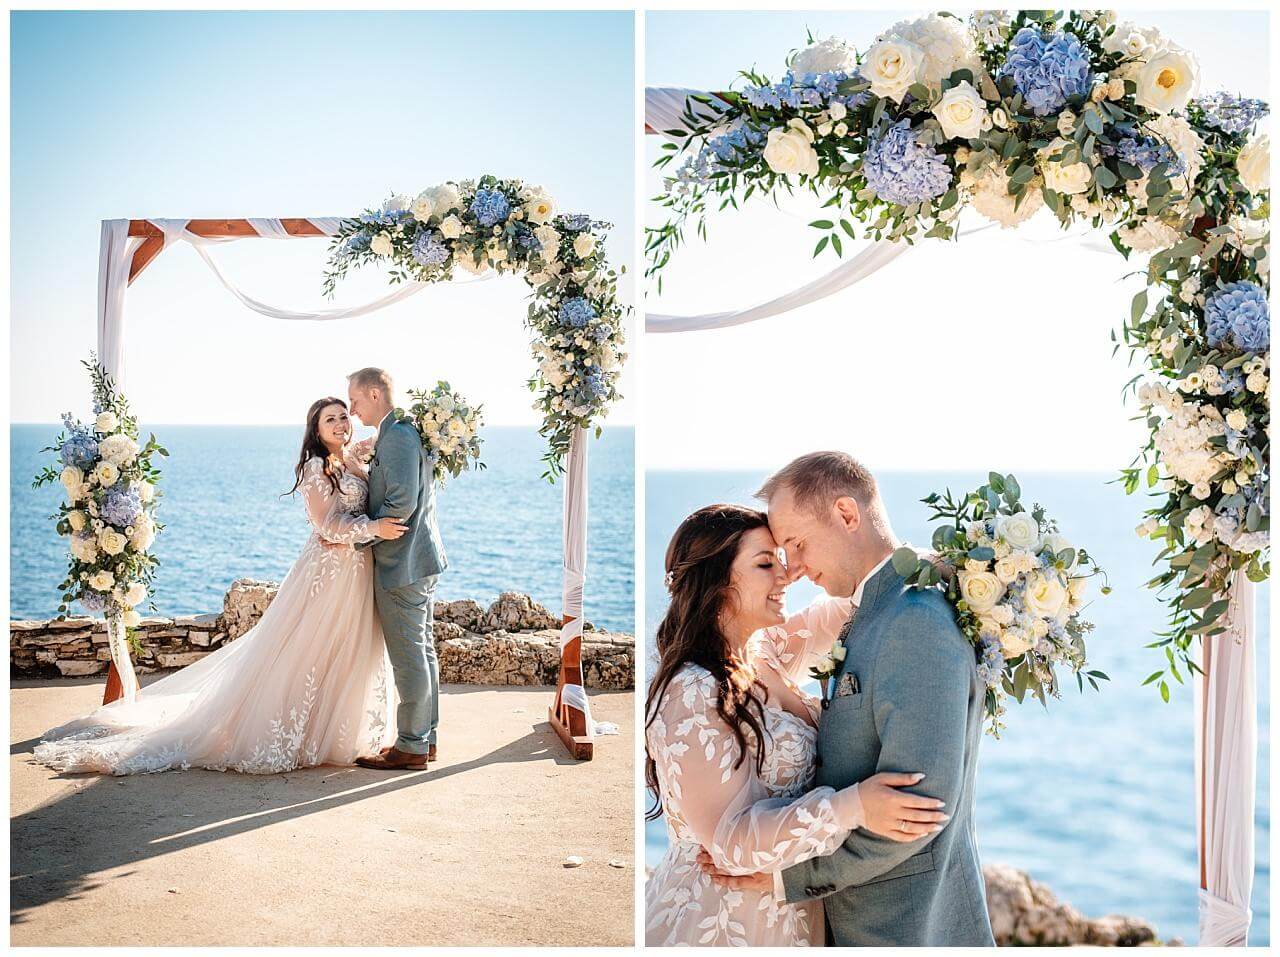 Brautpaar vor Traubogen aus Holz und weißer Stoffe Blau weißer Blumendekoration mit dem Blick aufs Meer bei einer Hochzeit in einer privaten Finka